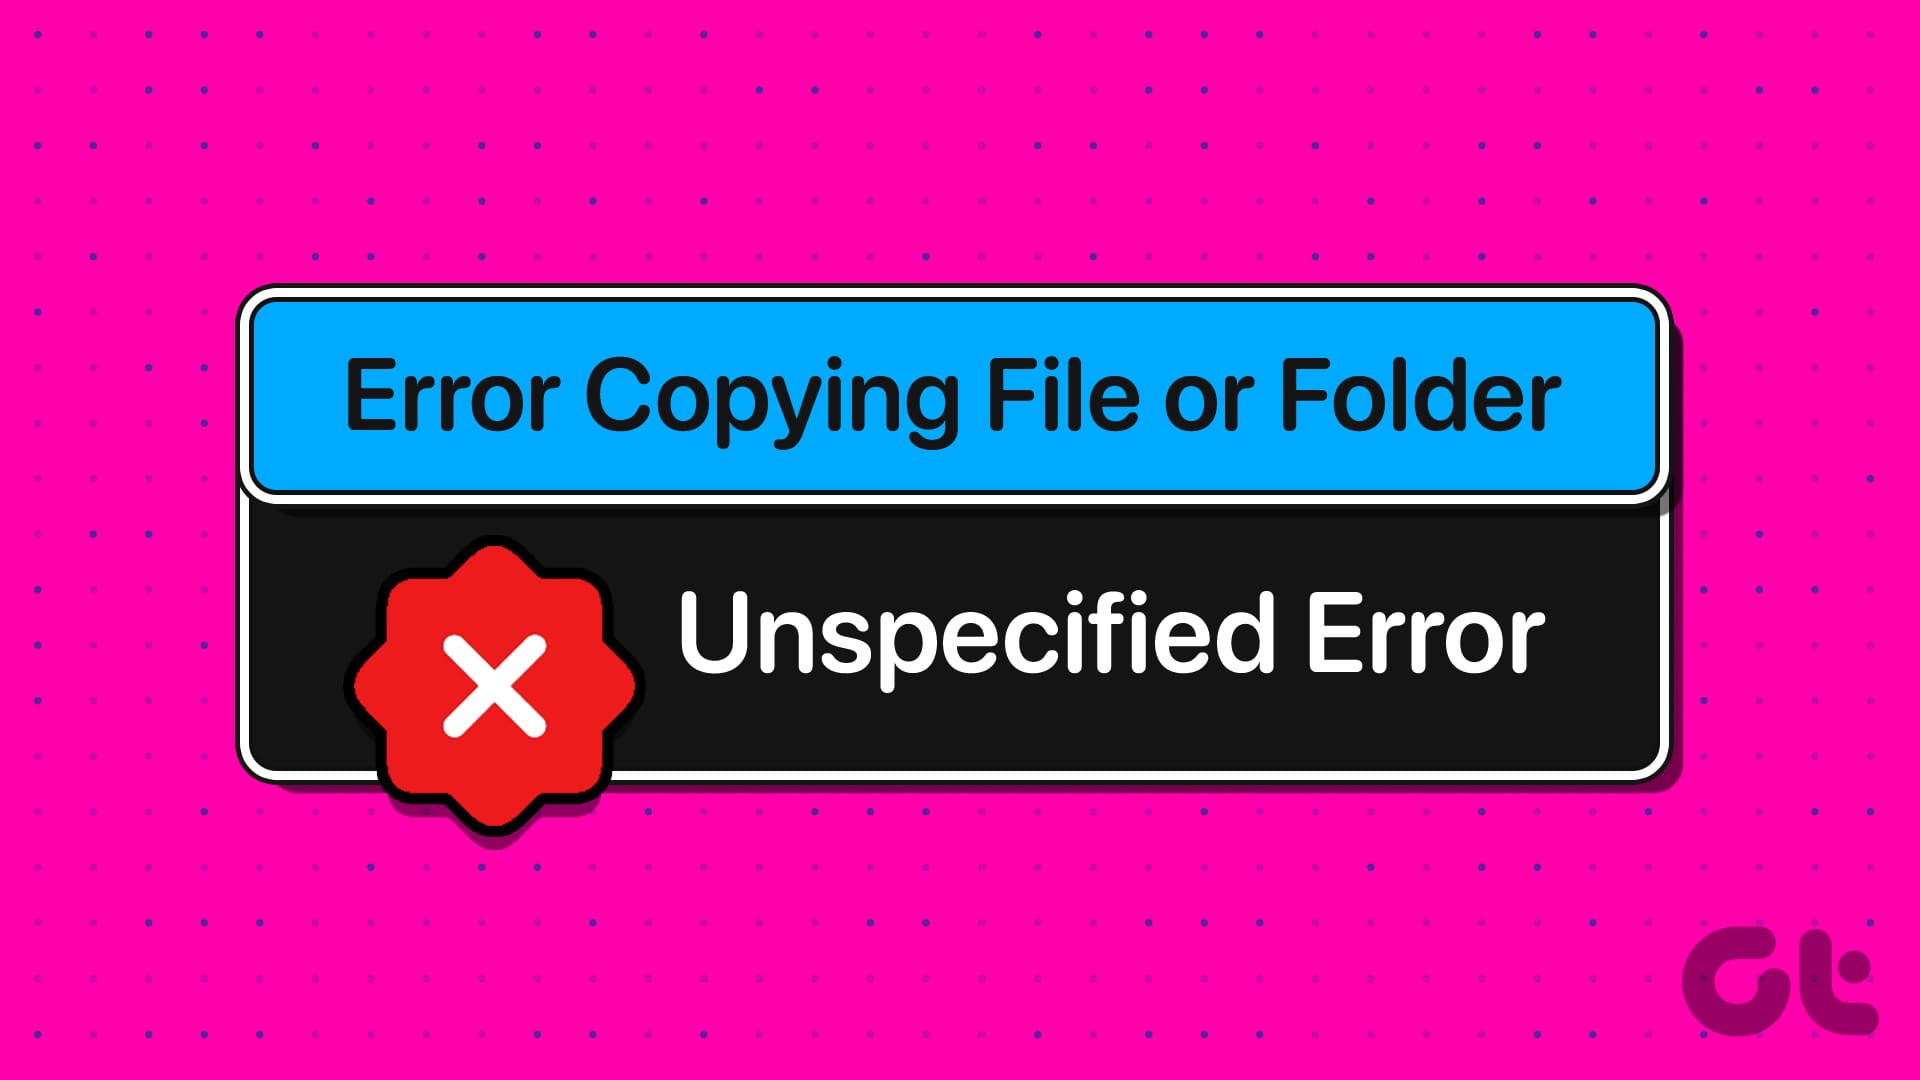 Files copy error